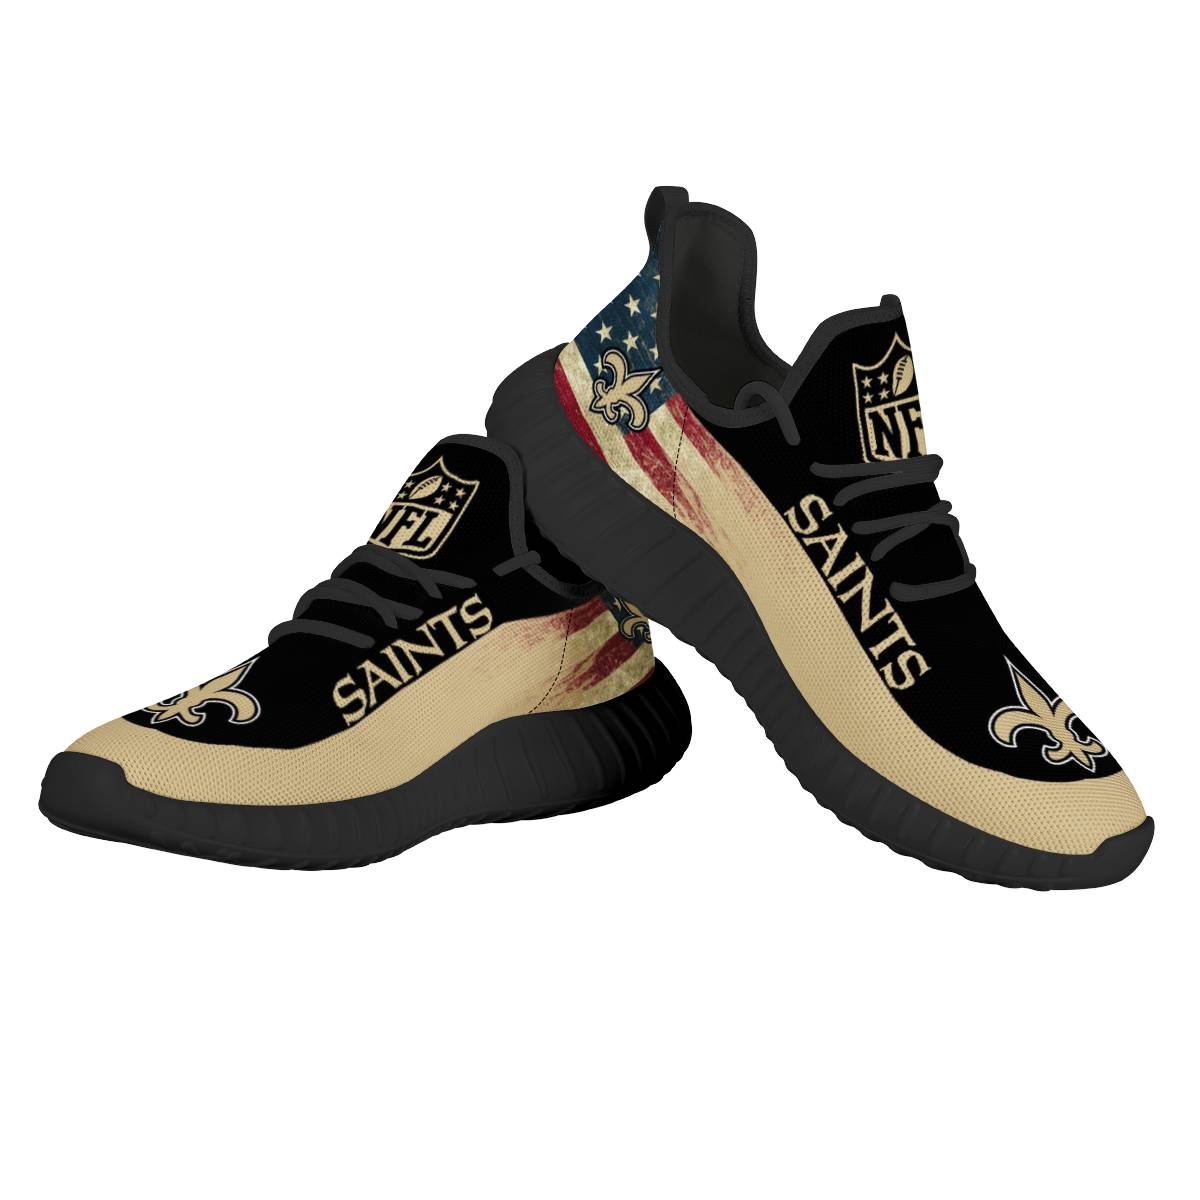 Women's NFL New Orleans Saints Mesh Knit Sneakers/Shoes 003